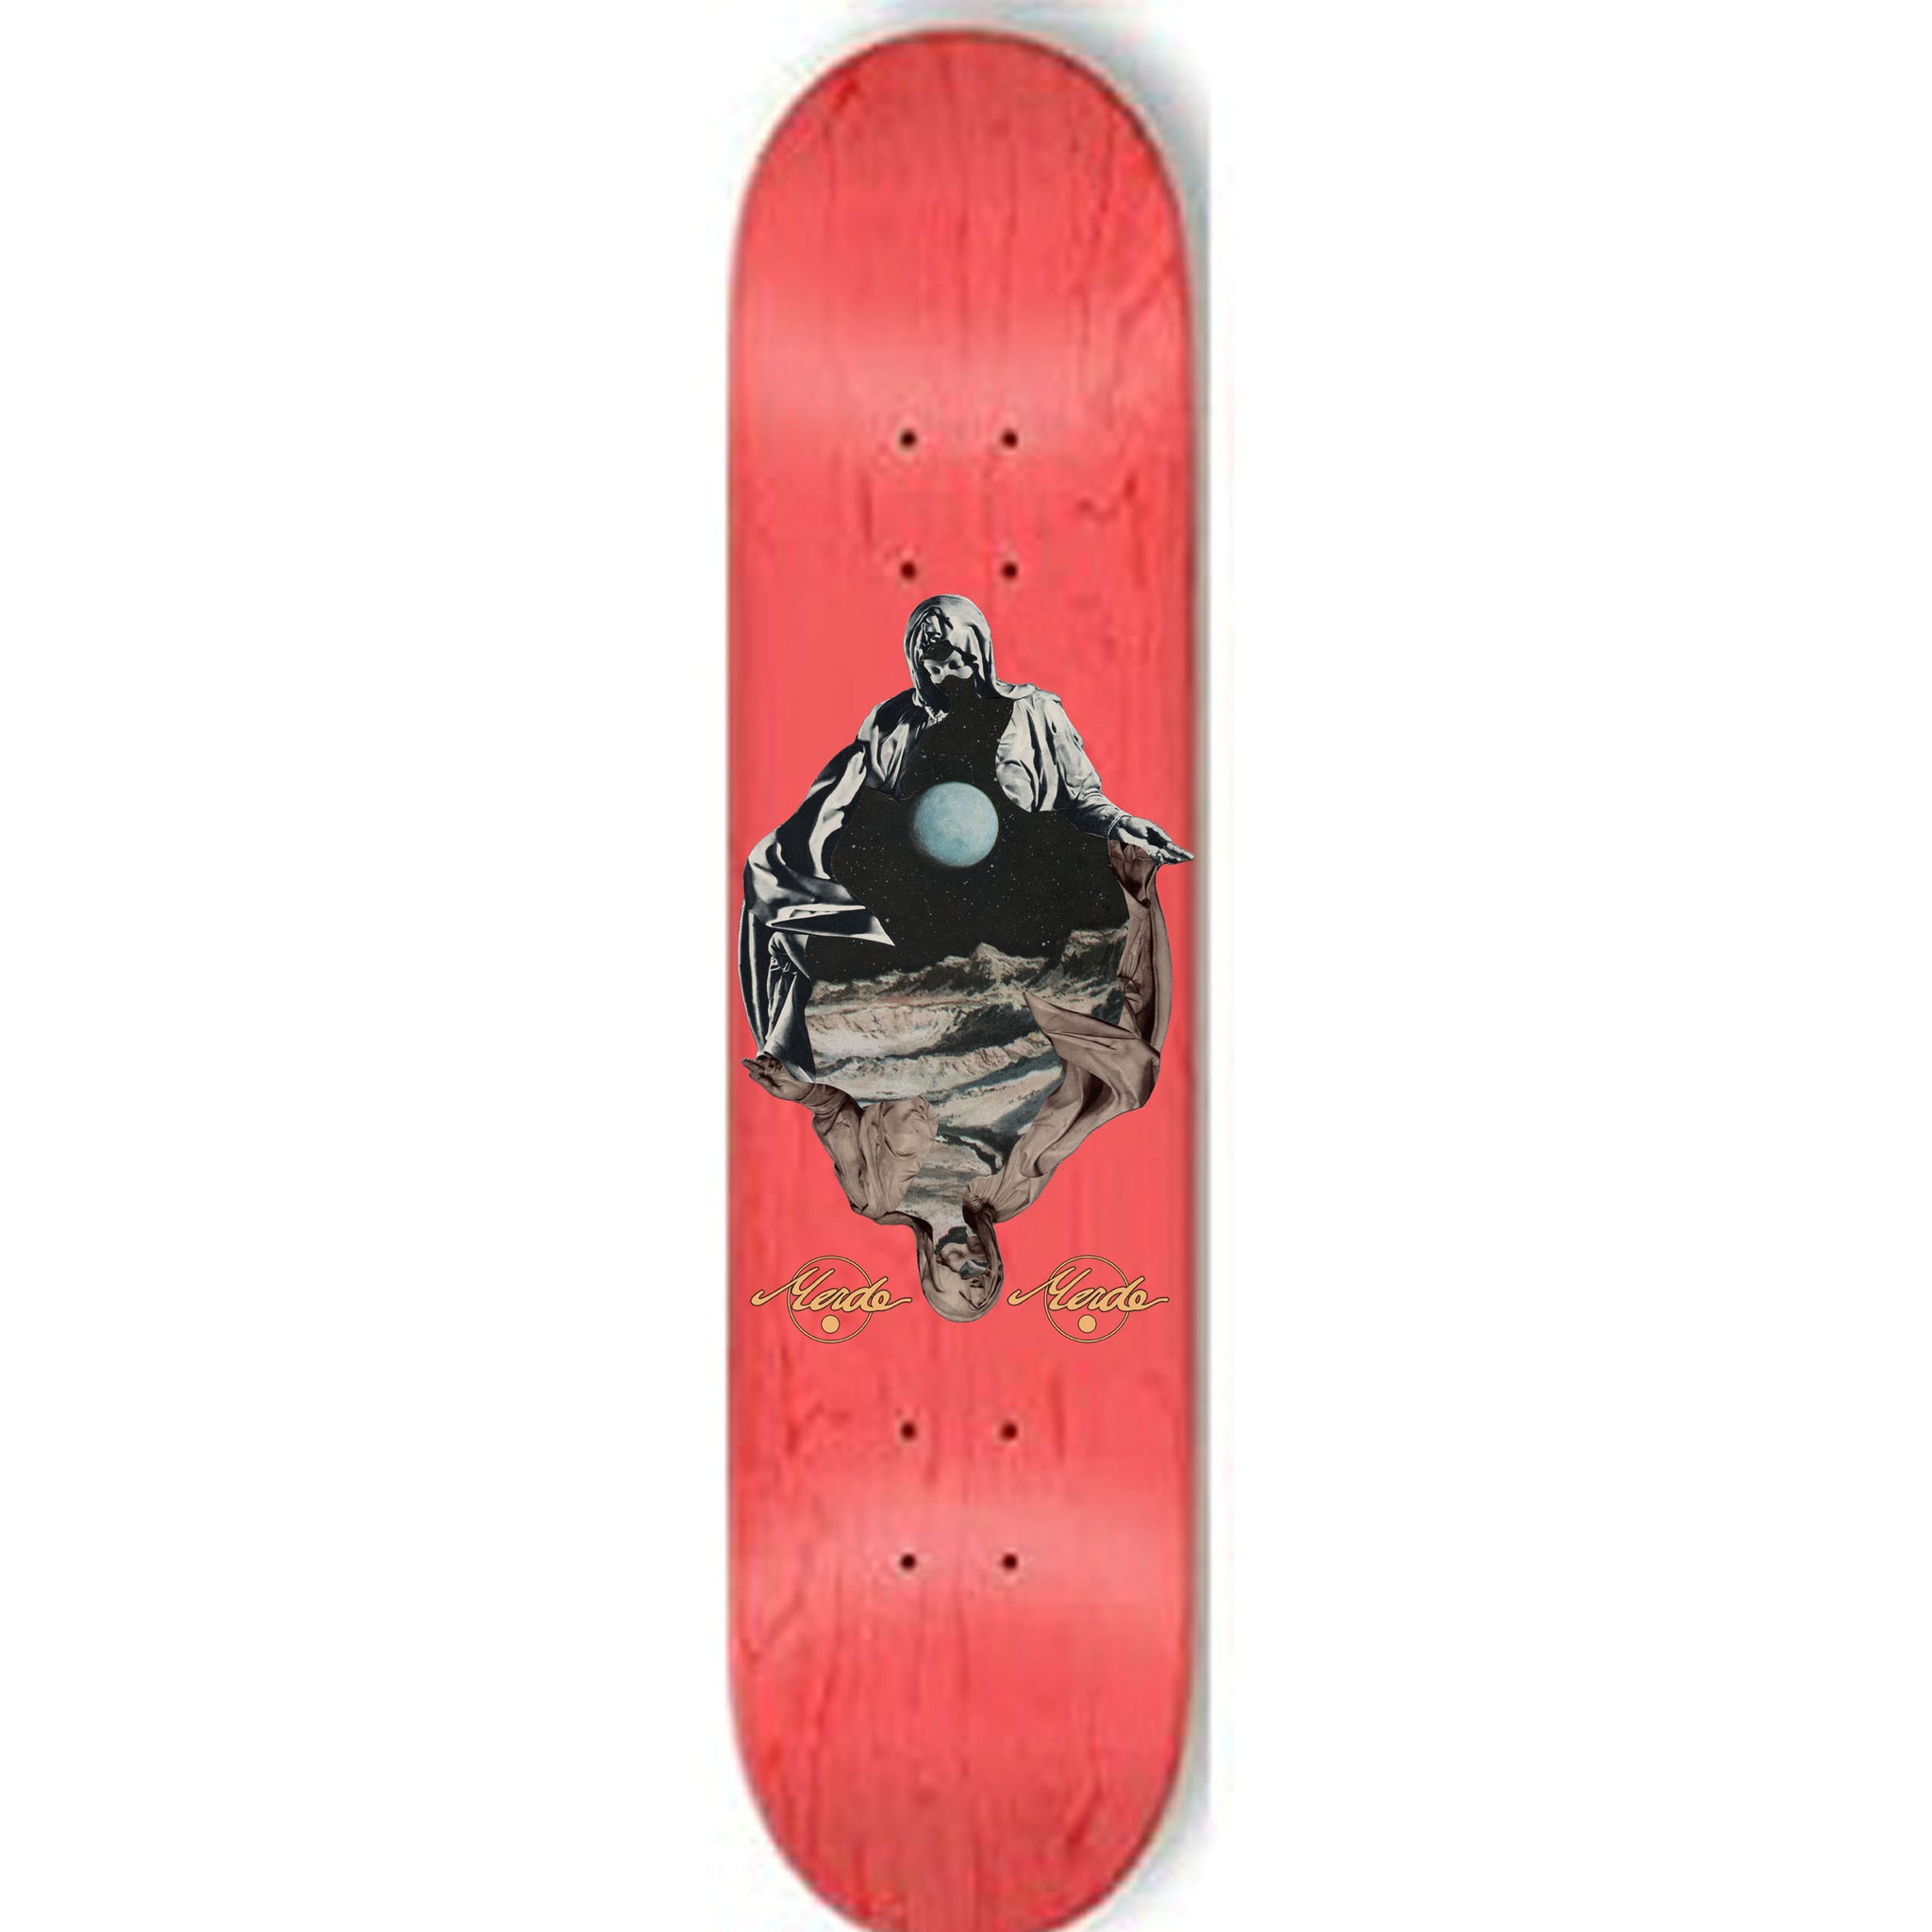 Merde Skateboards "Vaevre Tunger- Ojerum" assorted sized deck